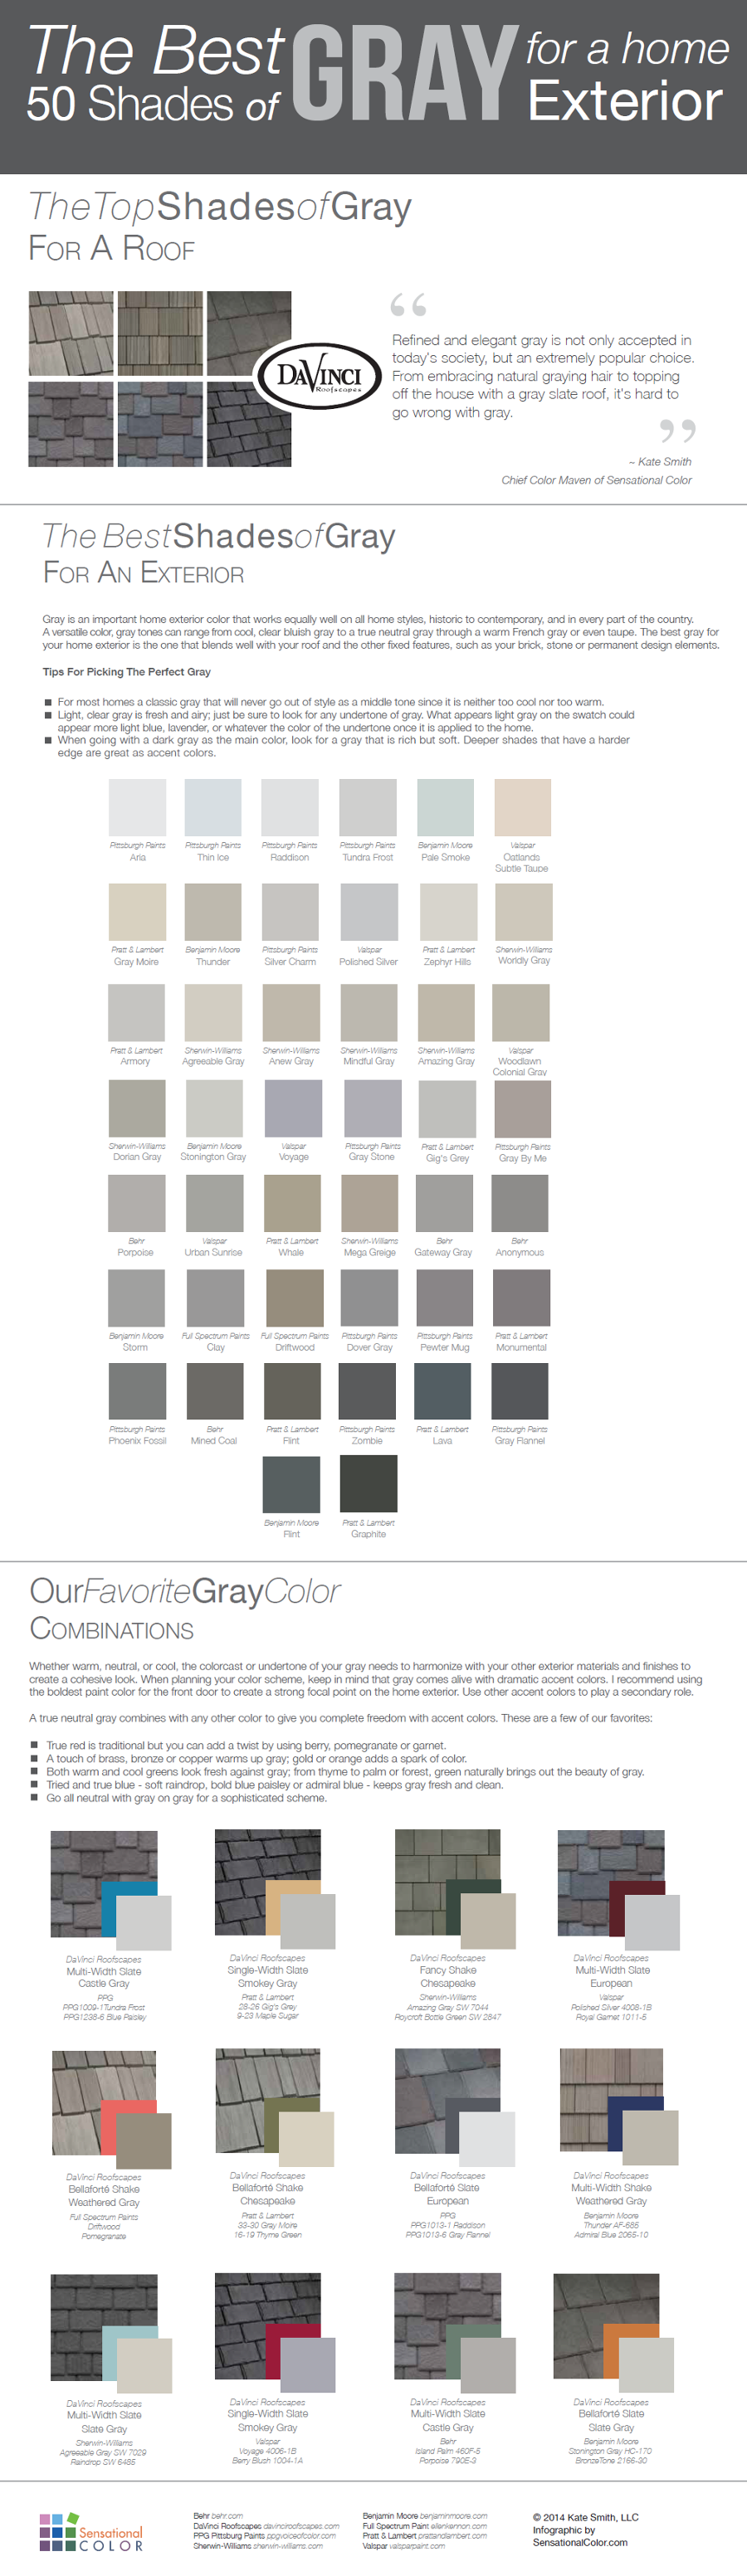 gray exteriors